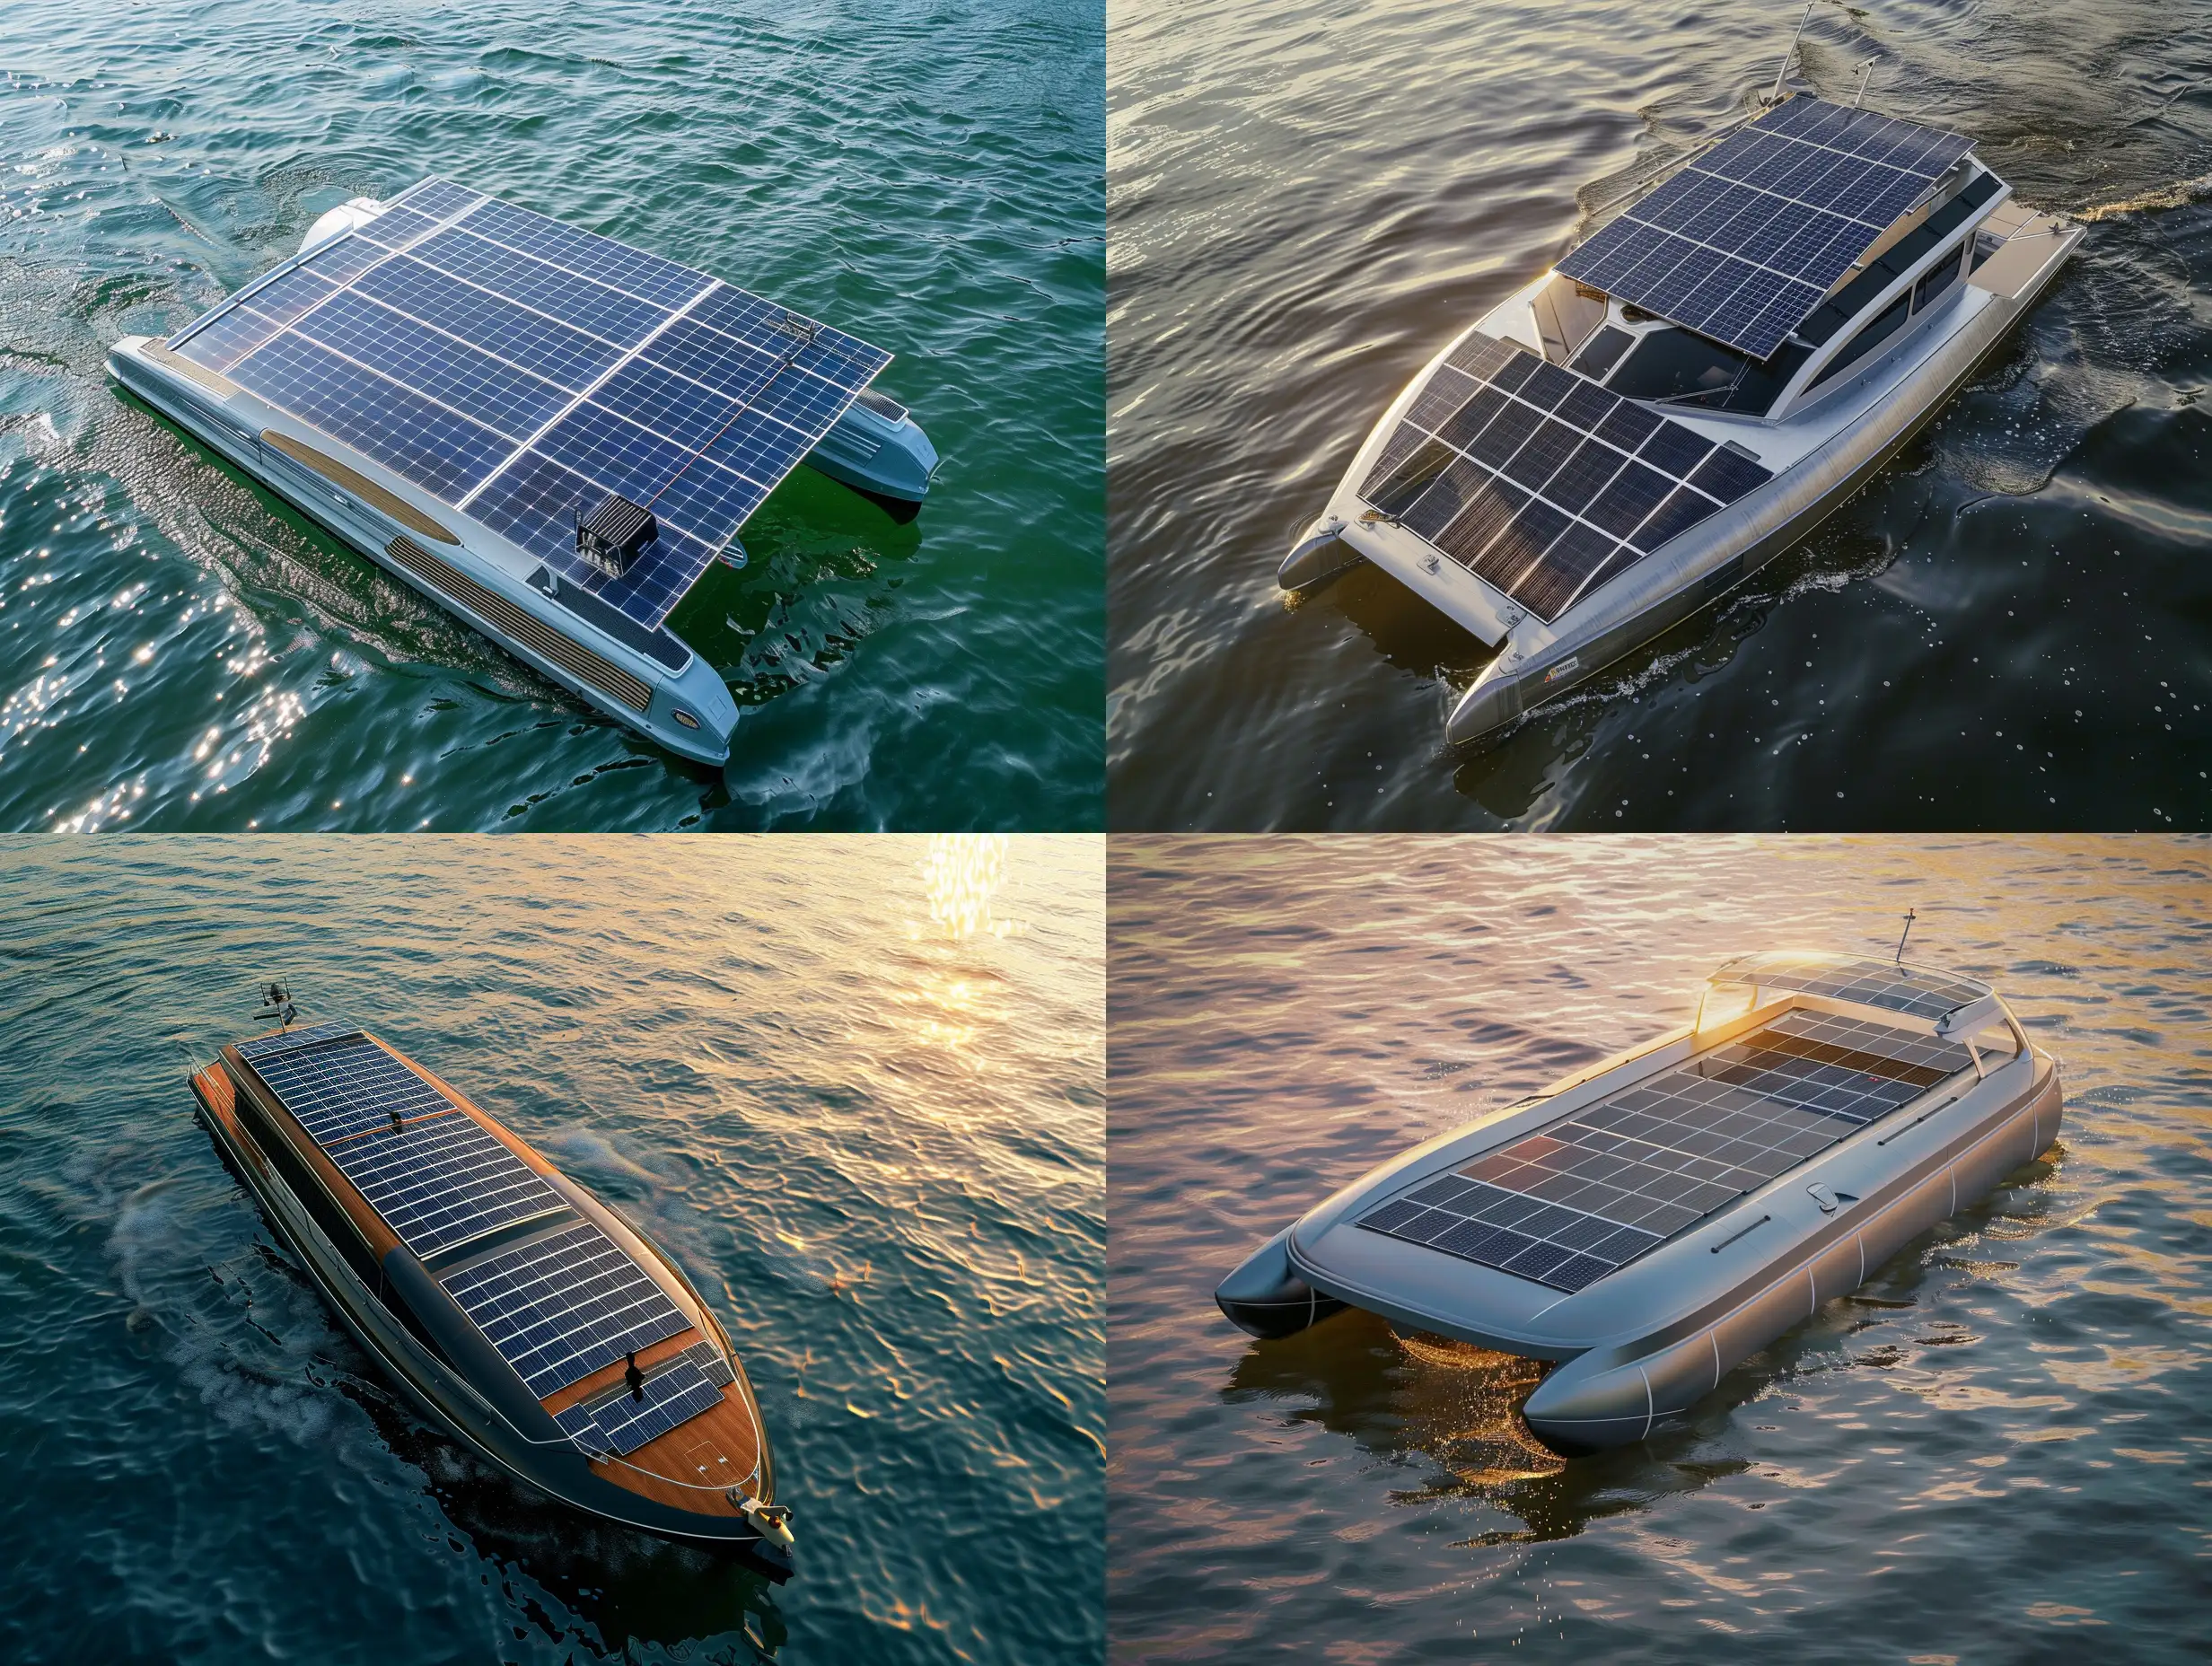 Barco de recreo con paneles solares en el techo. tiene que estar en medio del agua y debe verse el barco desde arriba, como a vista de dron. Tiene 4 paneles solares instalados. Tiene que ser una imagen realista.